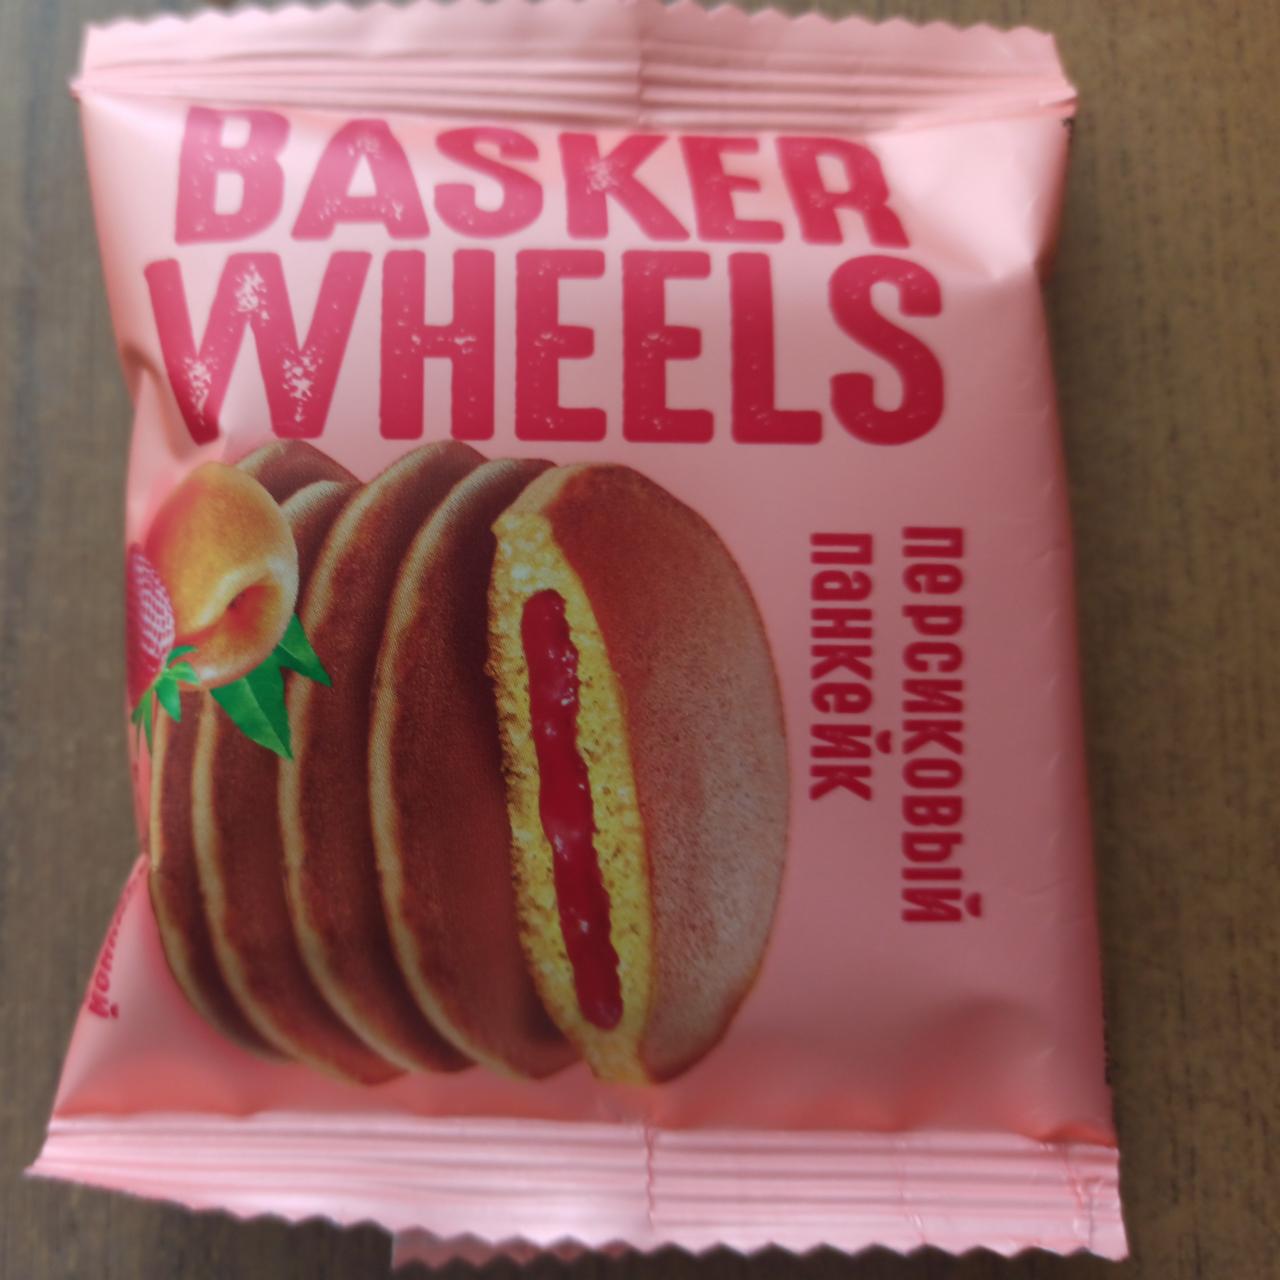 Фото - Basker wheels персиковый панкейк Яшкино